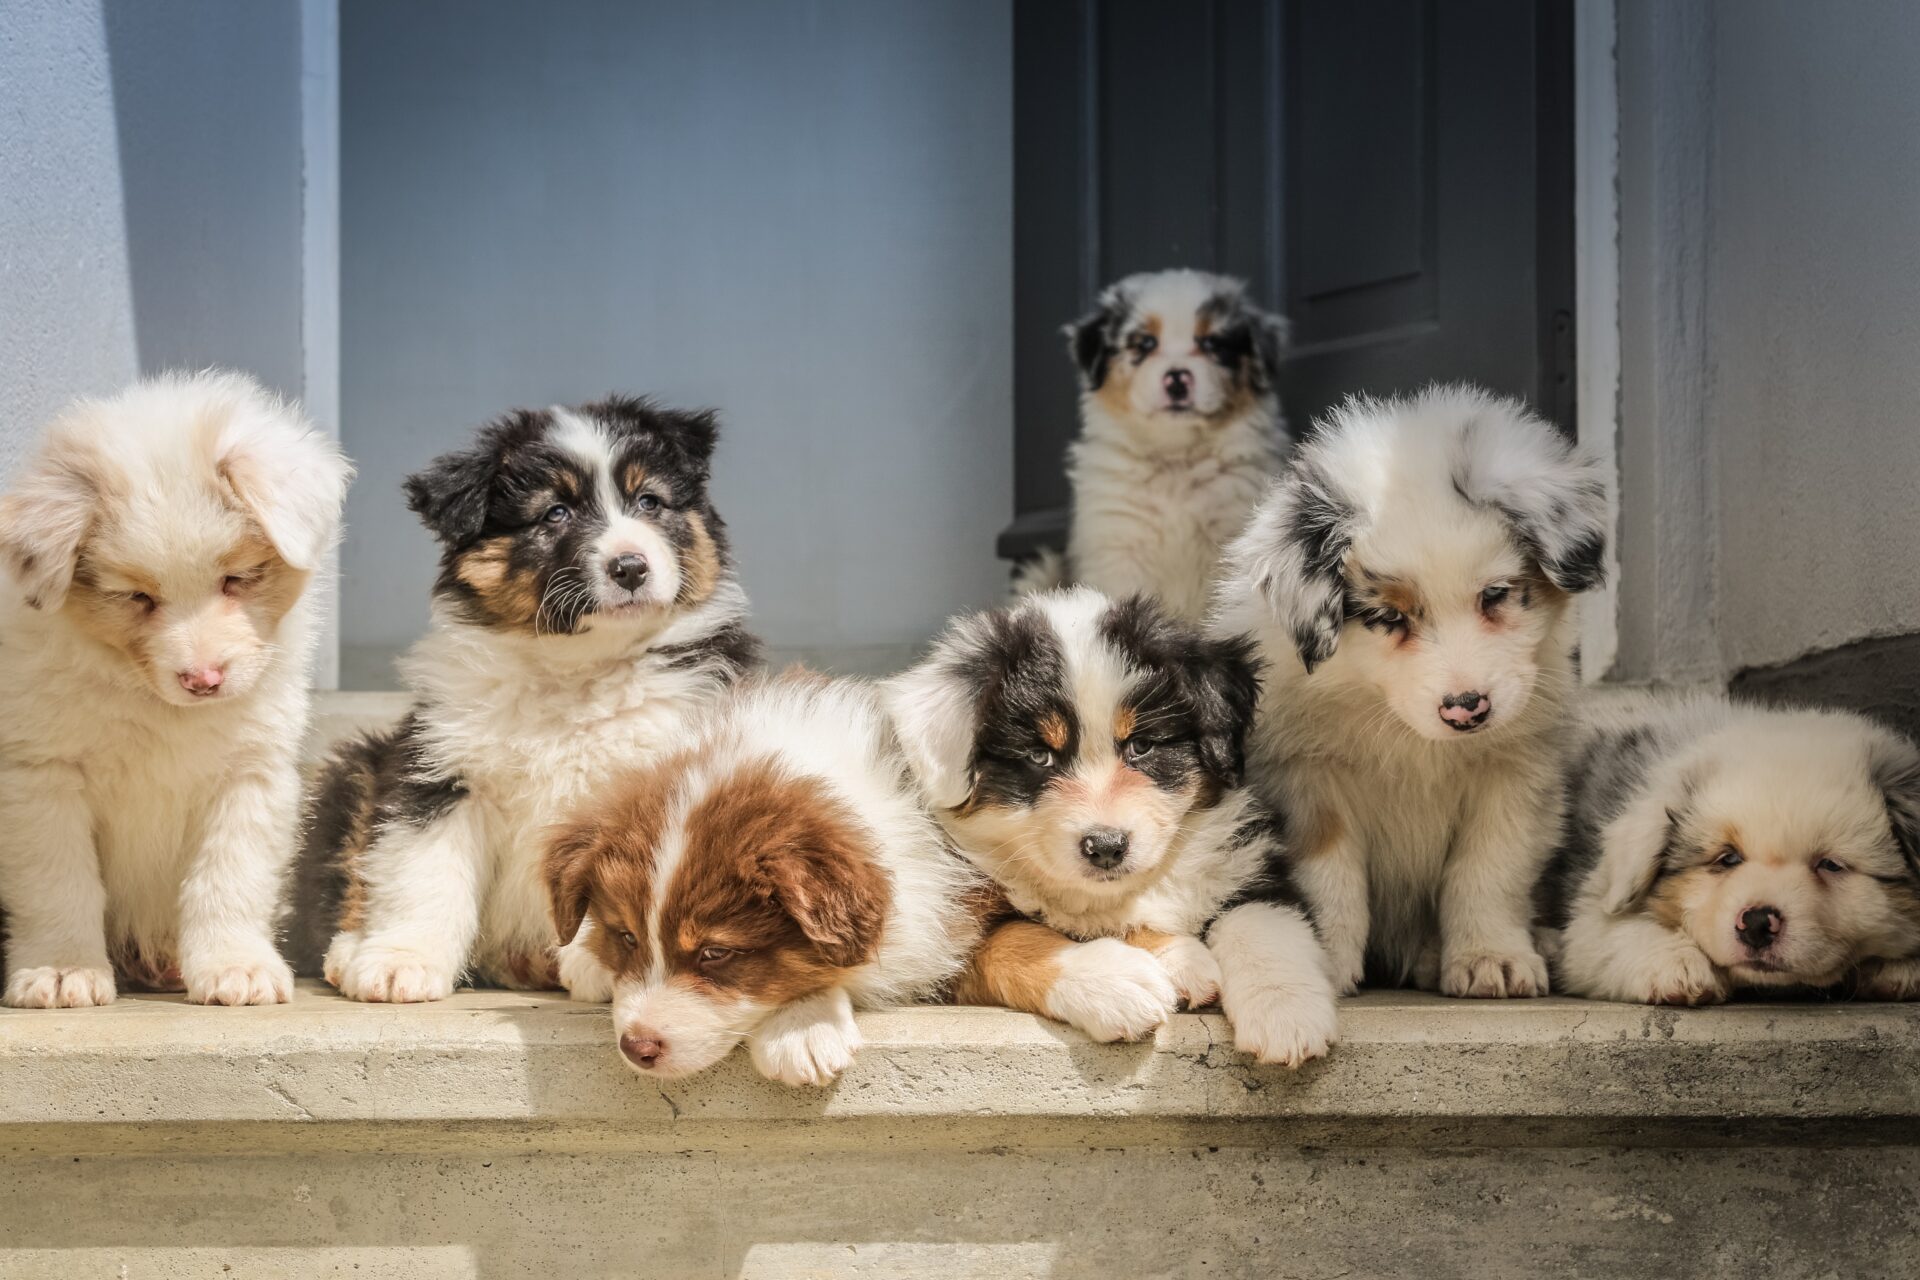 A litter of cute puppies